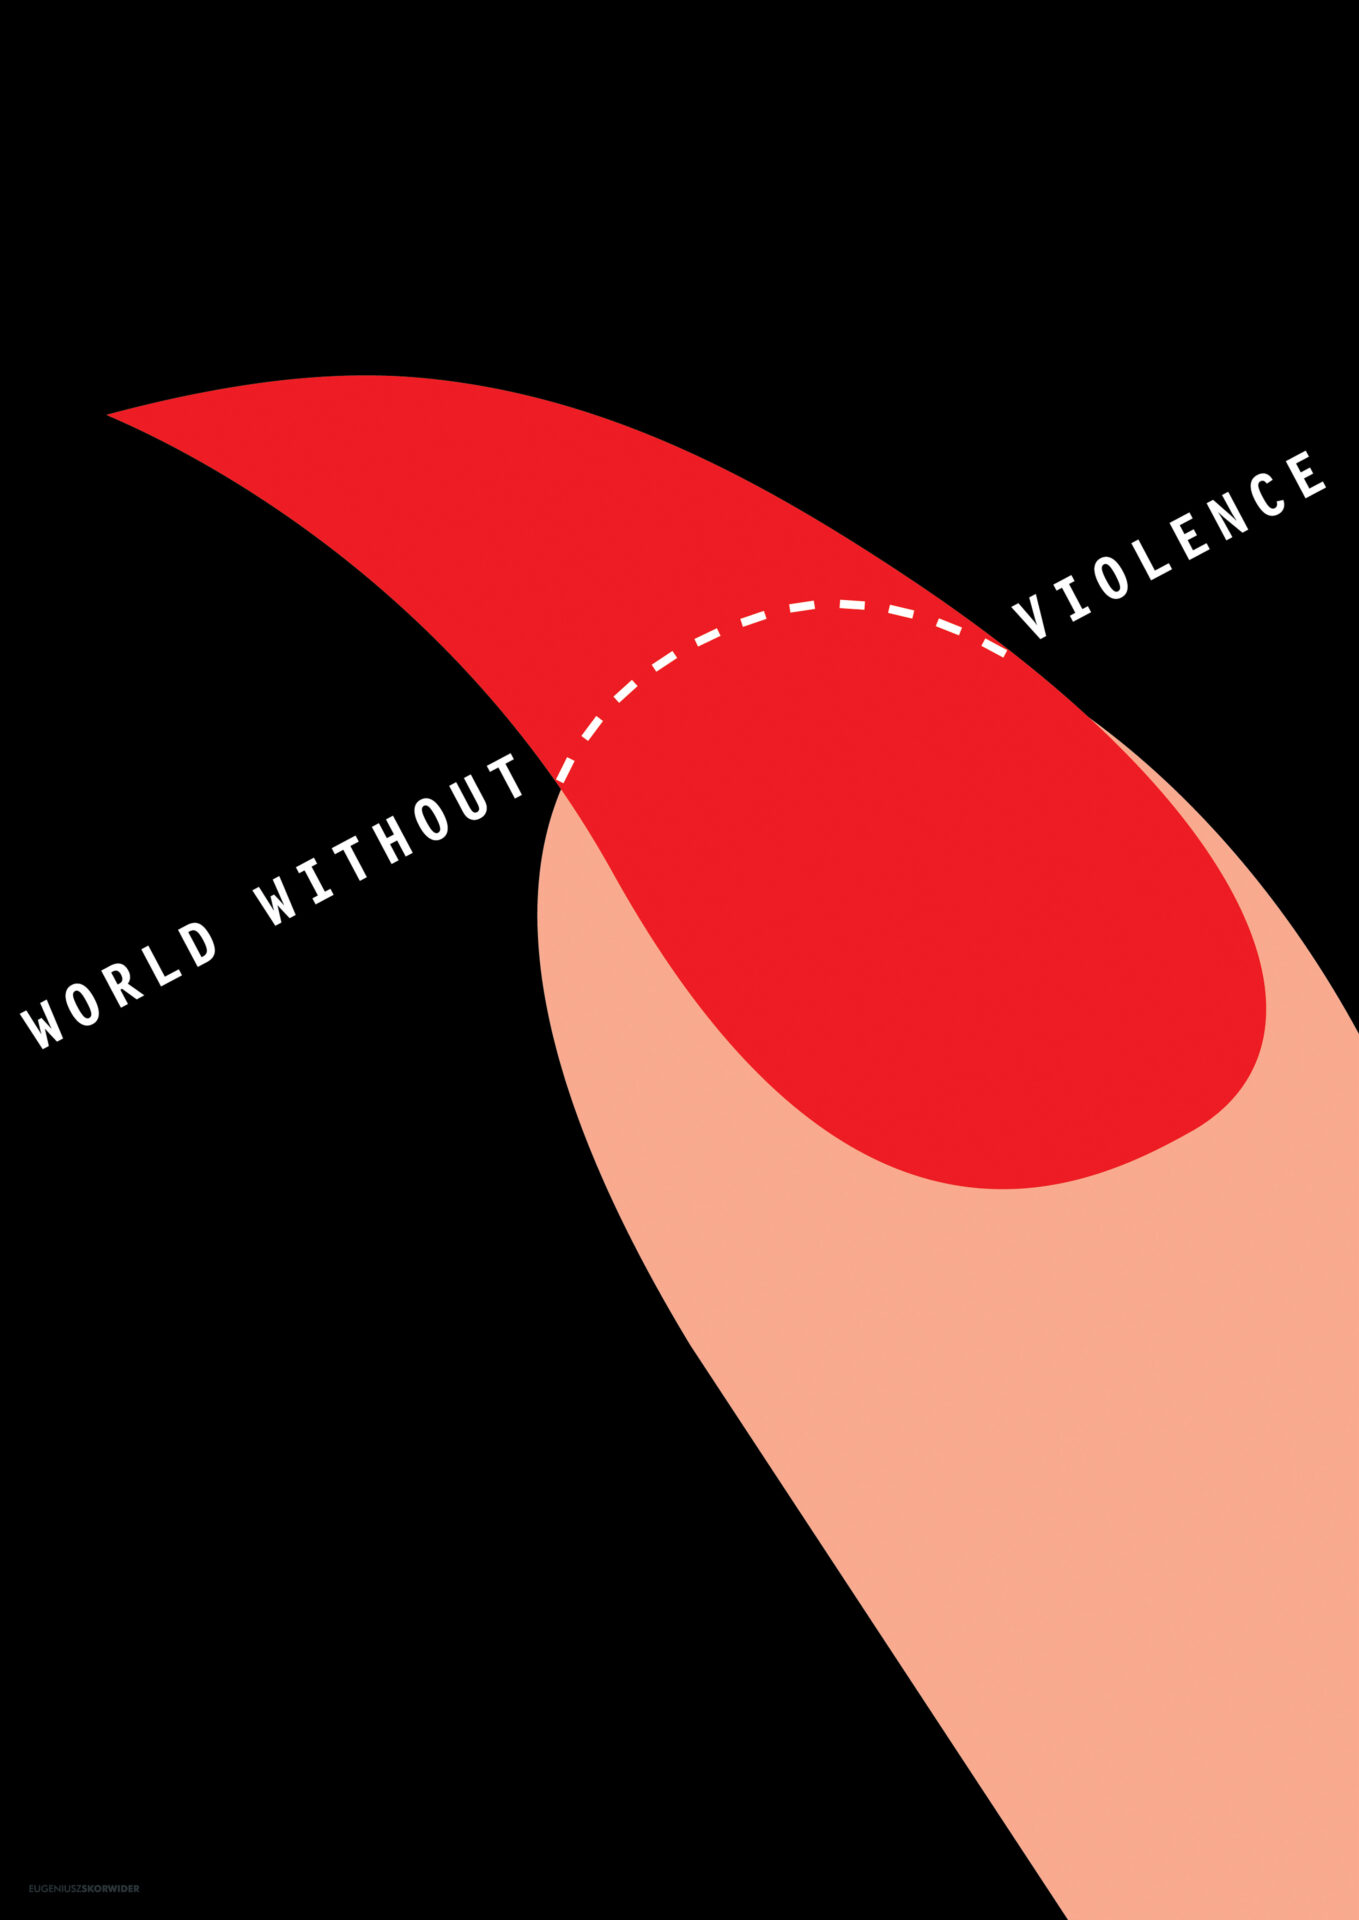 Grafika pod tytułem "World without violence"; palec z zaznaczonym zanokcicem do odcięcia.